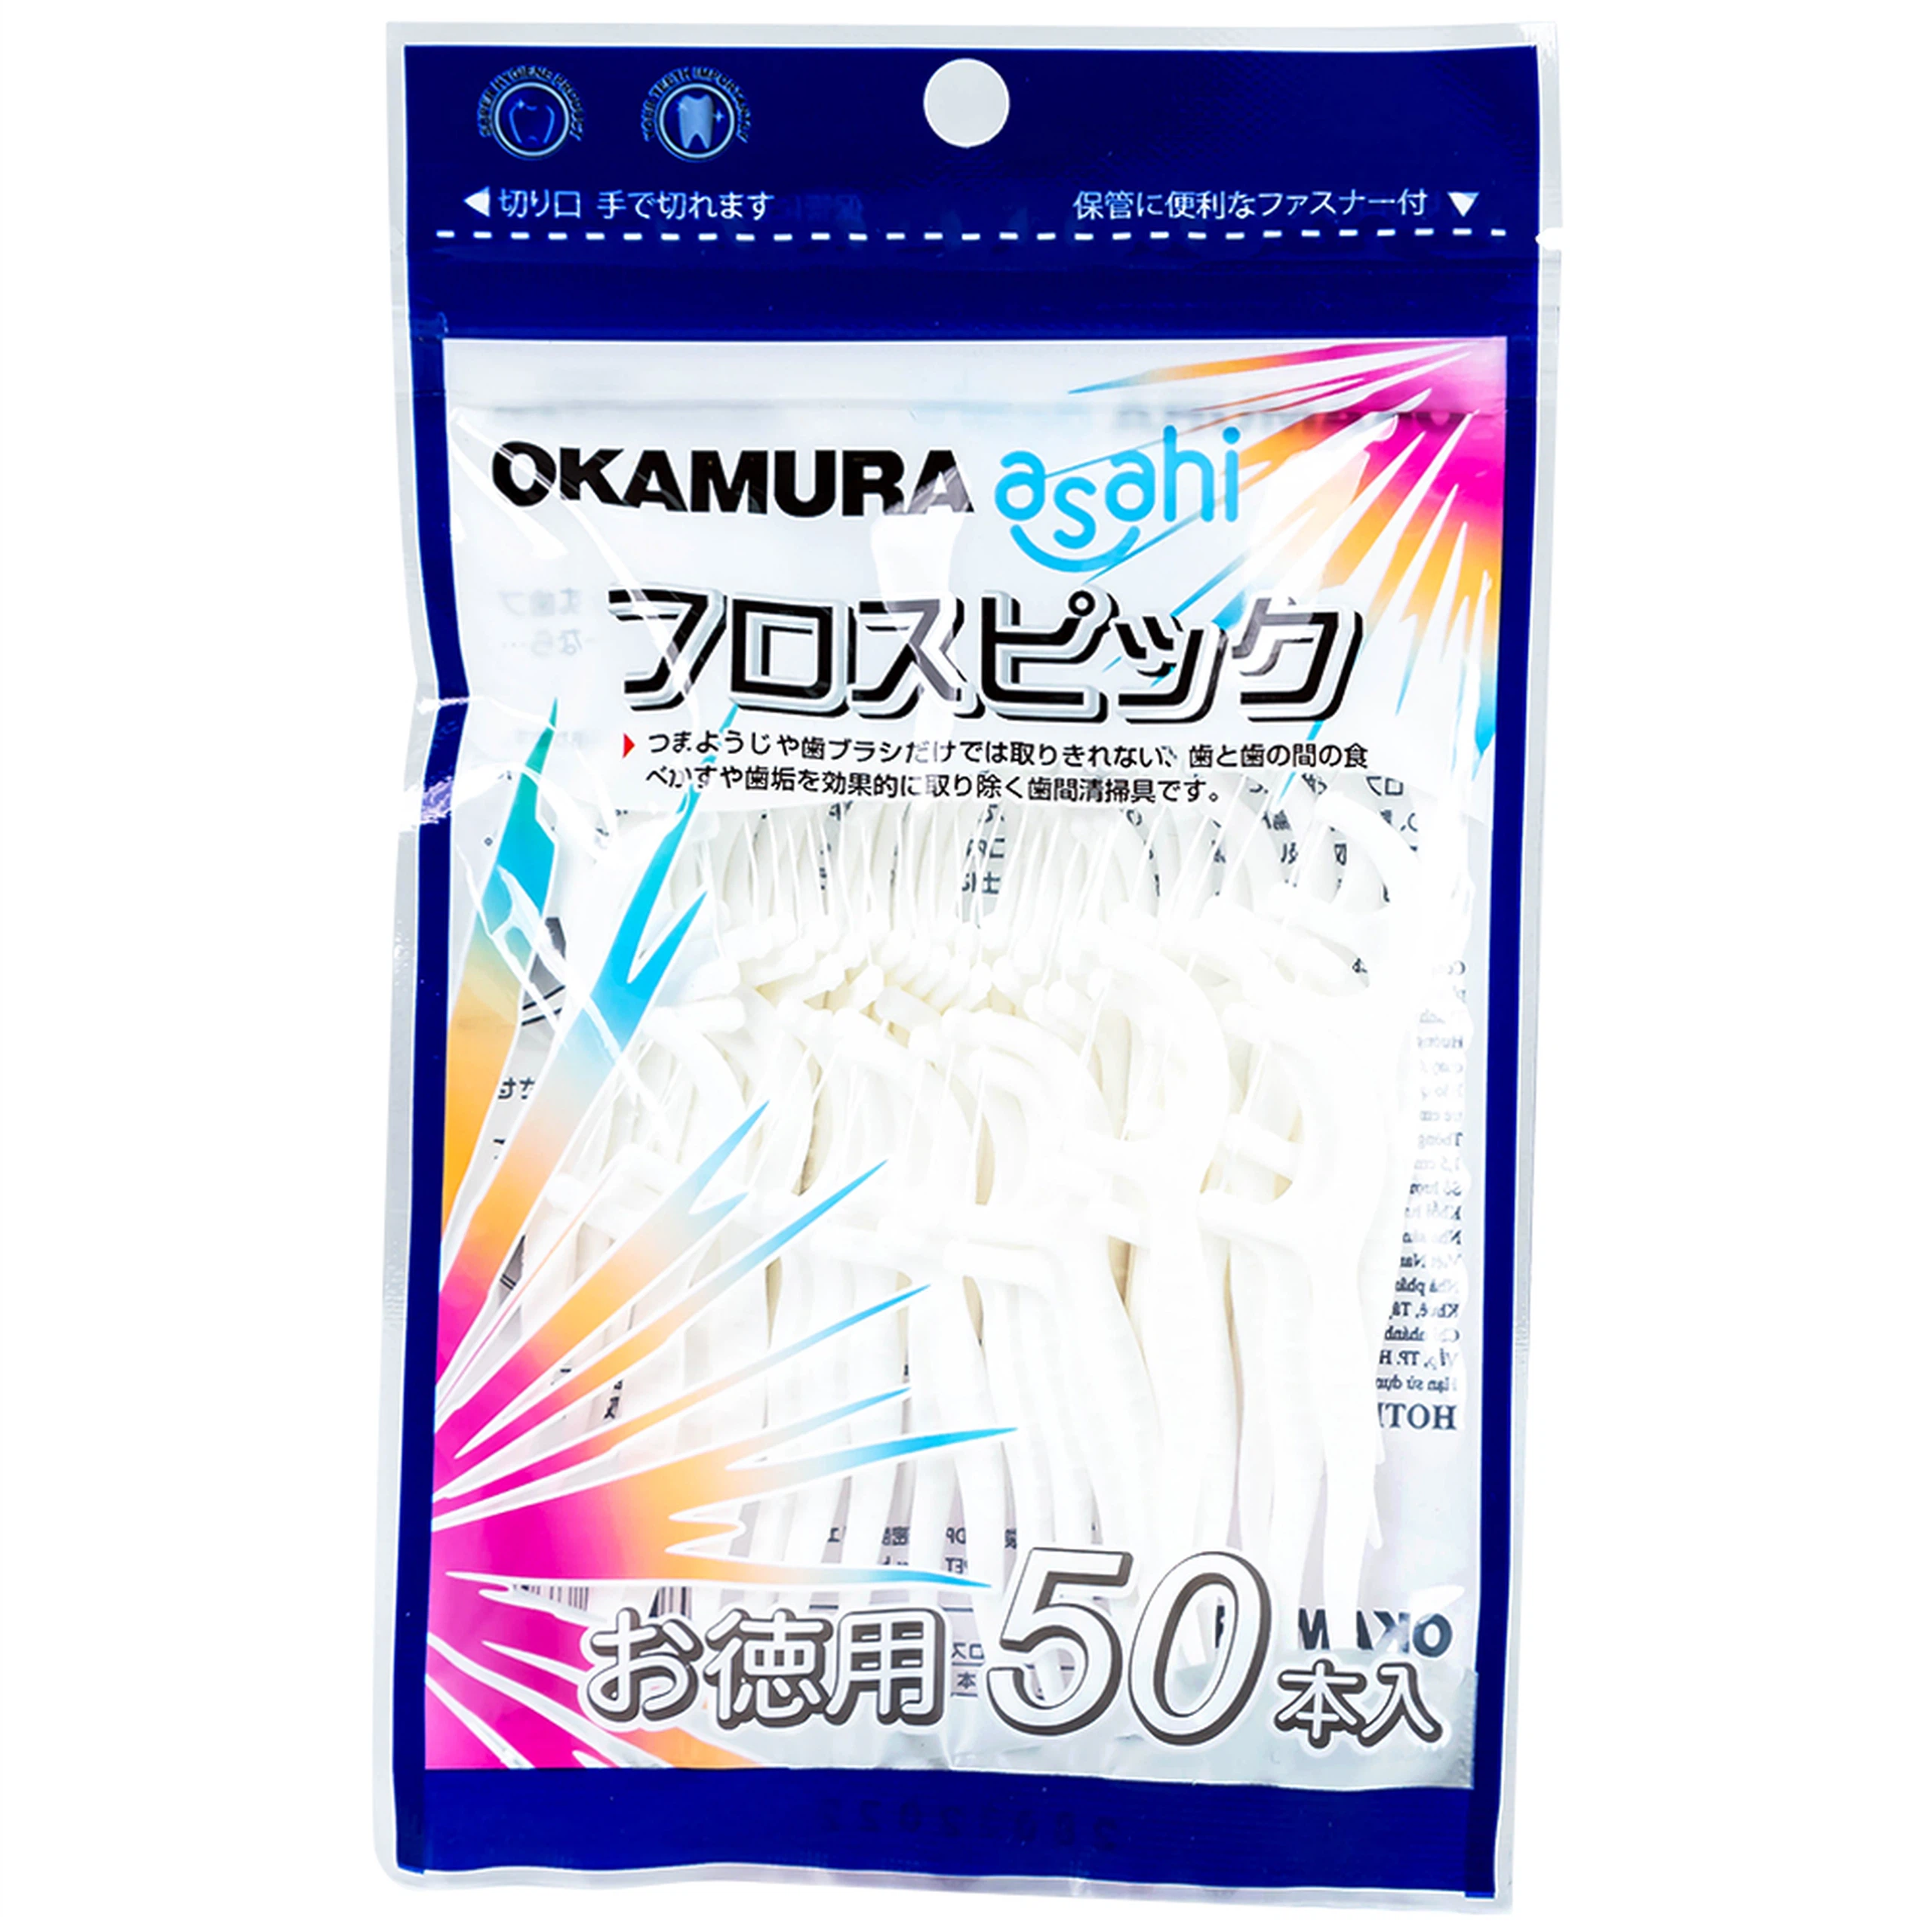 Tăm chỉ kẽ răng Okamura làm sạch mảng bám thức ăn dư thừa trong kẽ răng (50 cây) 